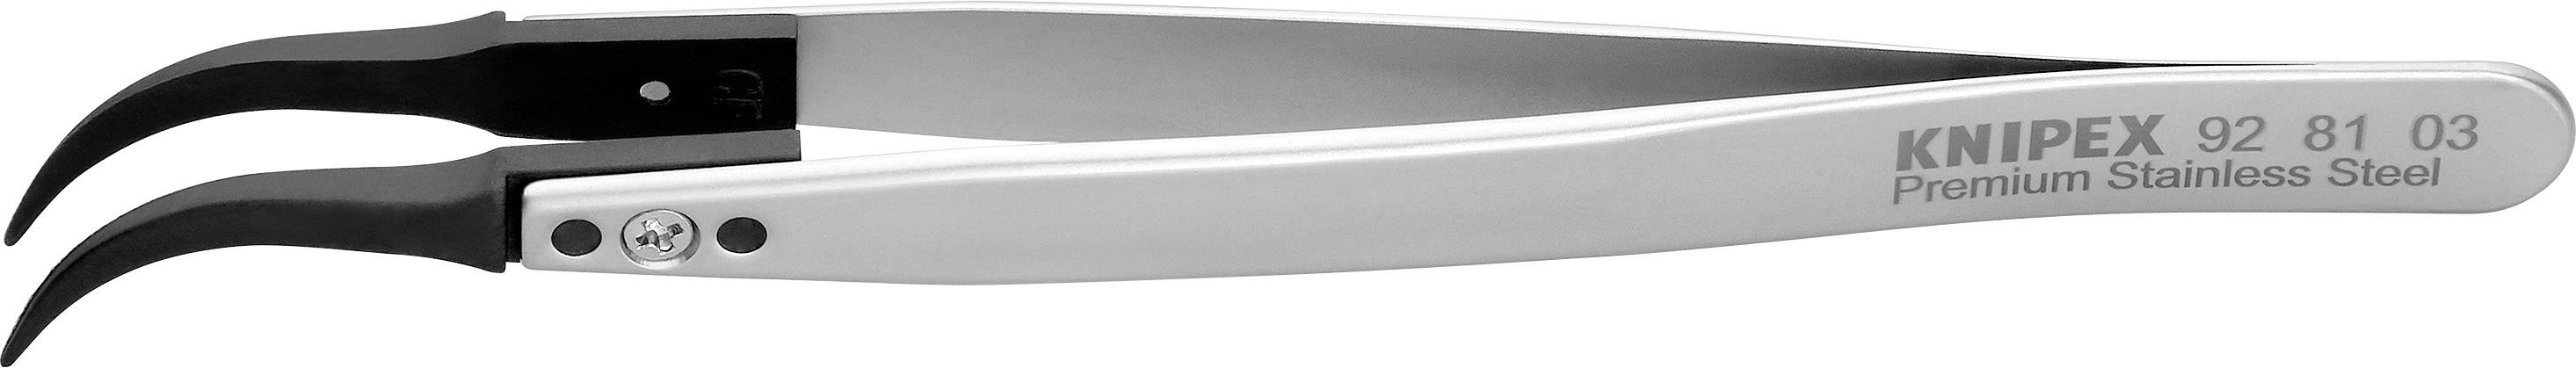 KNIPEX 92 81 03 ESD-Pinzette mit Wechselspitzen 1 Stück Spitz 130 mm